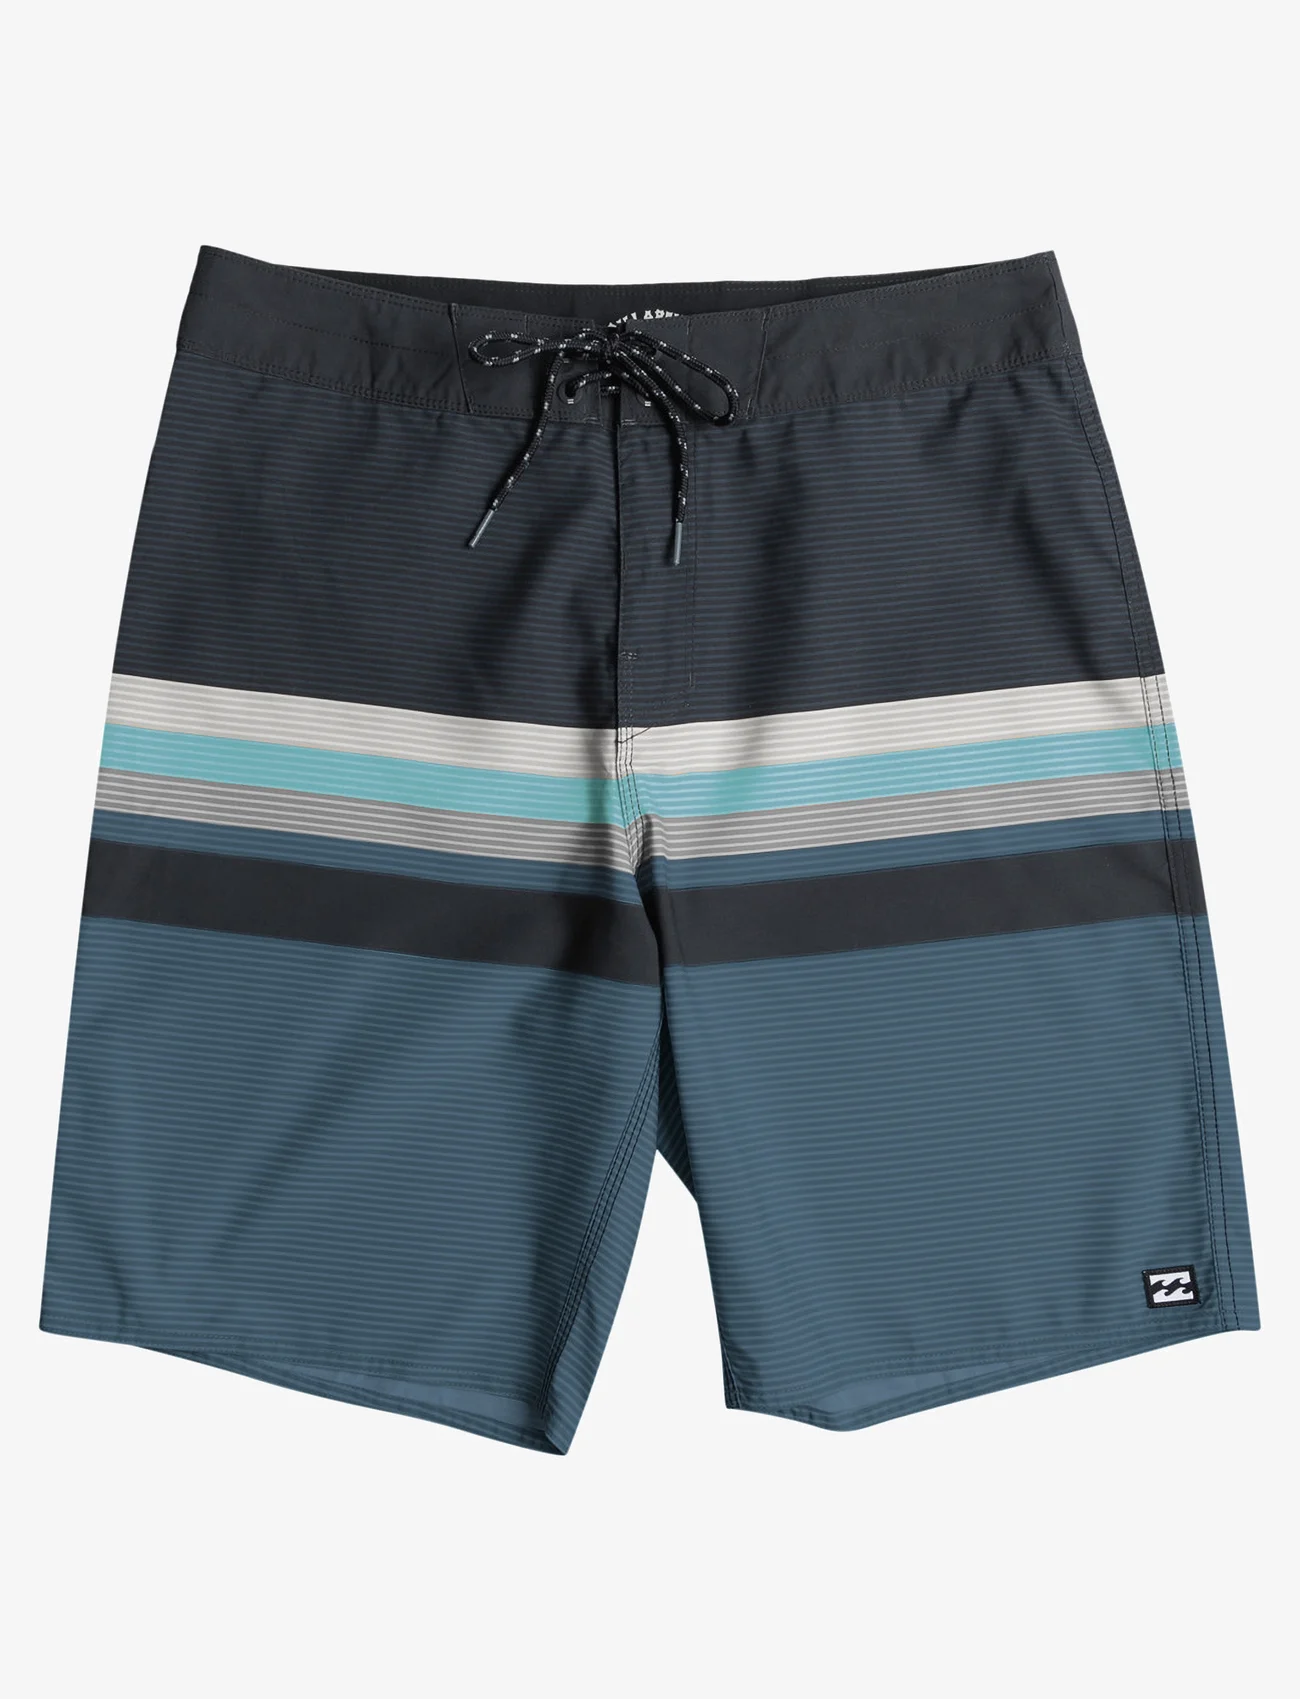 Billabong - ALL DAY HTR STRIPES OG - swim shorts - vintage indigo - 0